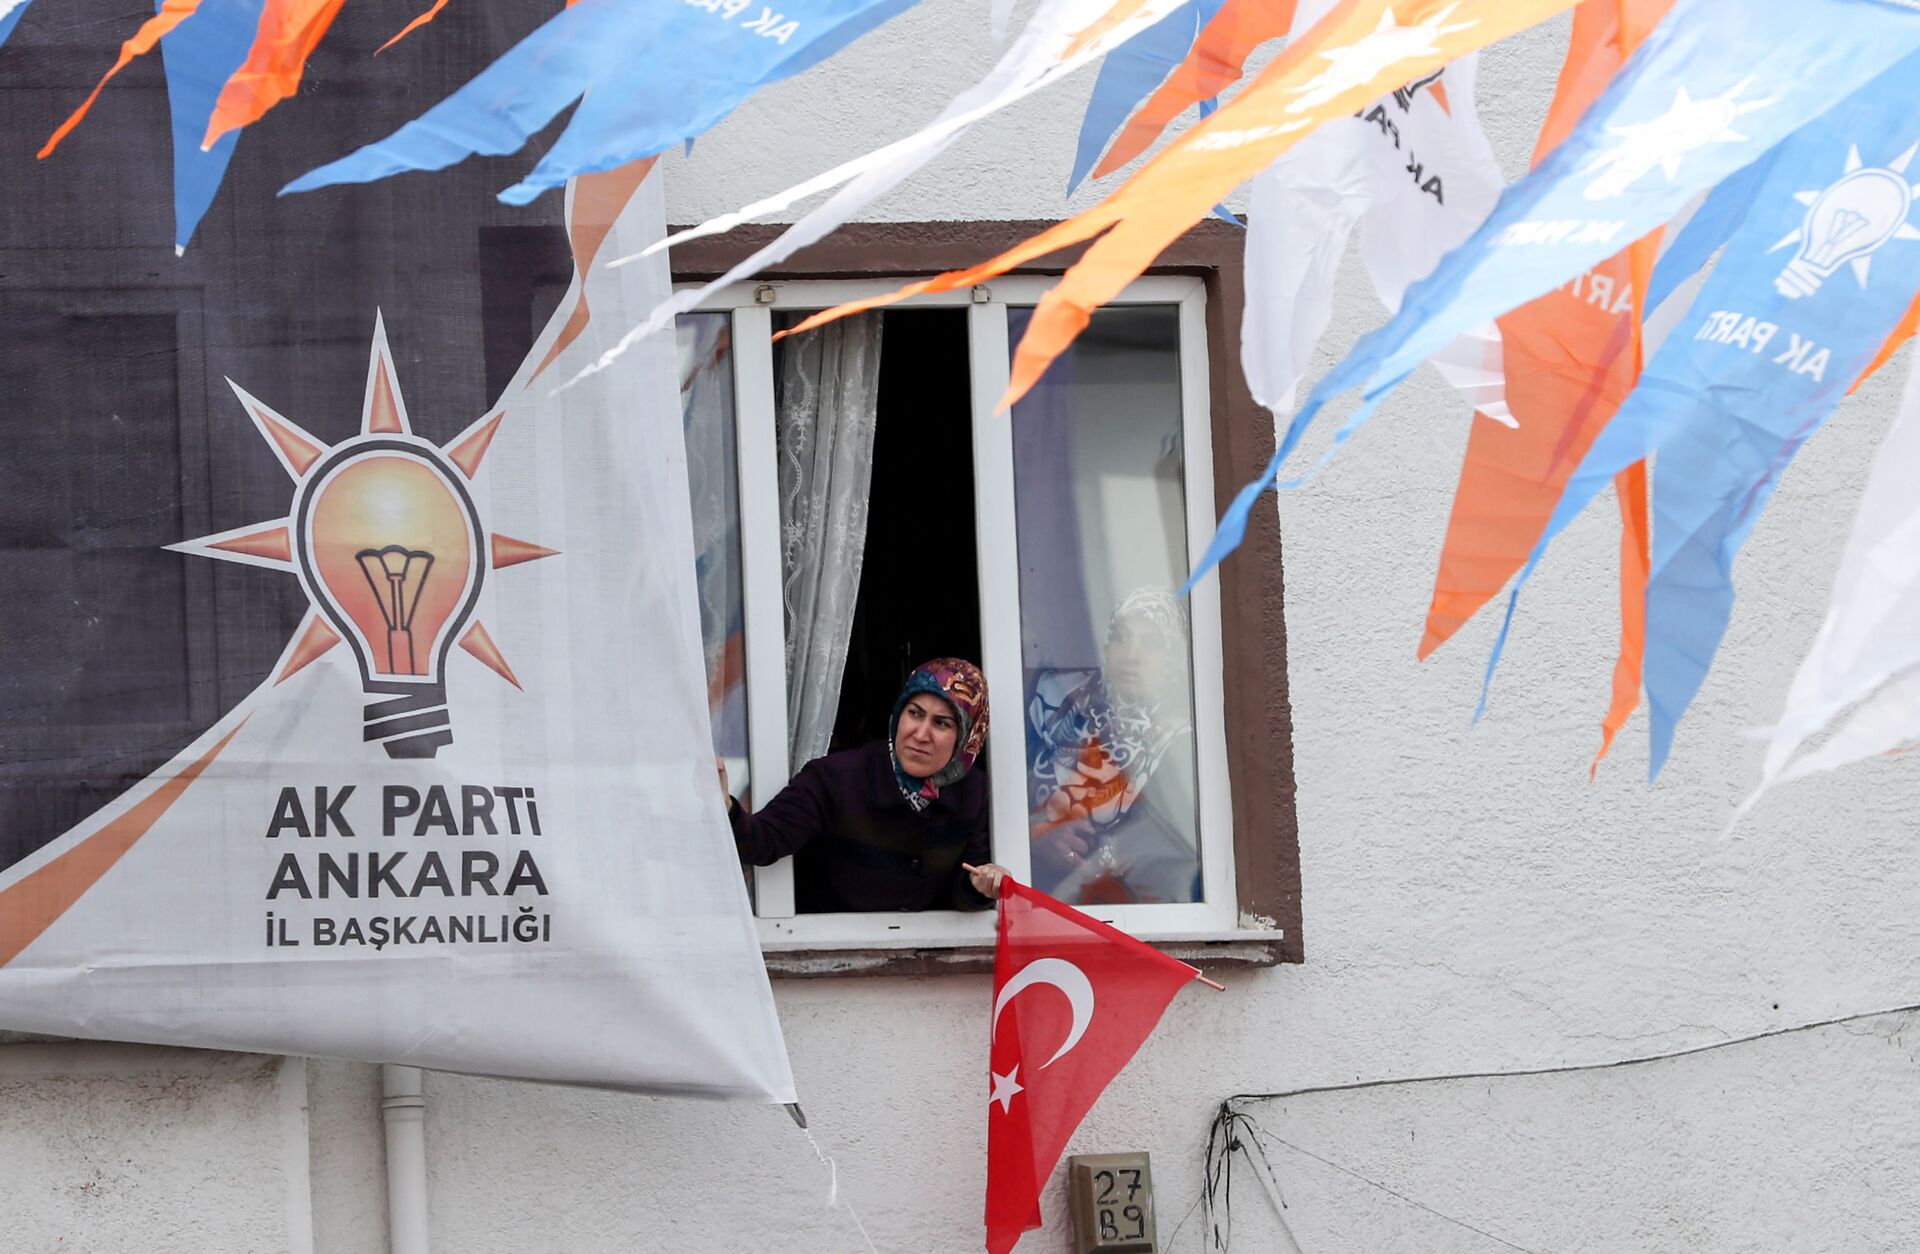 Eleições antecipadas na Turquia? 'Erdogan lidera partido dos nacionalistas incultos', diz analista - Sputnik Brasil, 1920, 23.08.2021